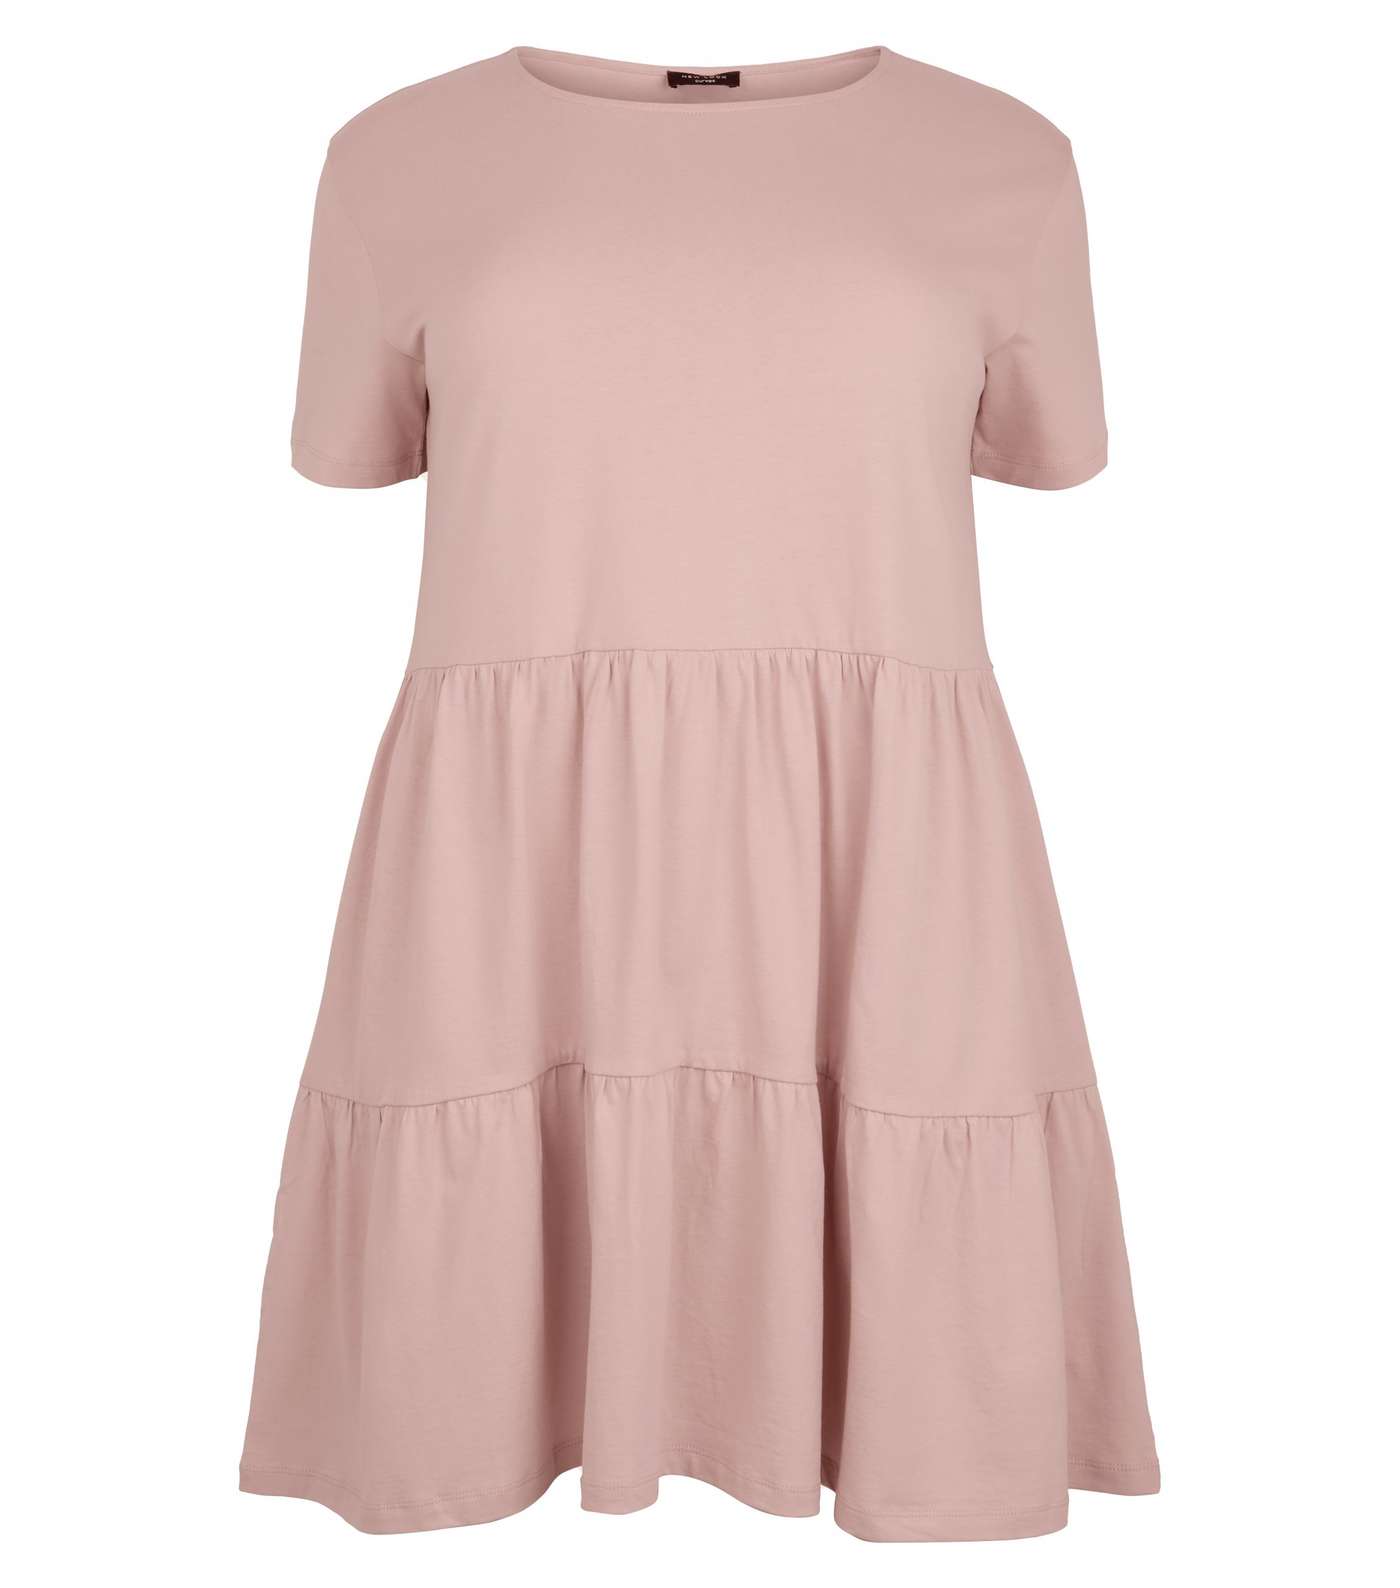 Curves Pale Pink Short Sleeve Smock Dress Image 4